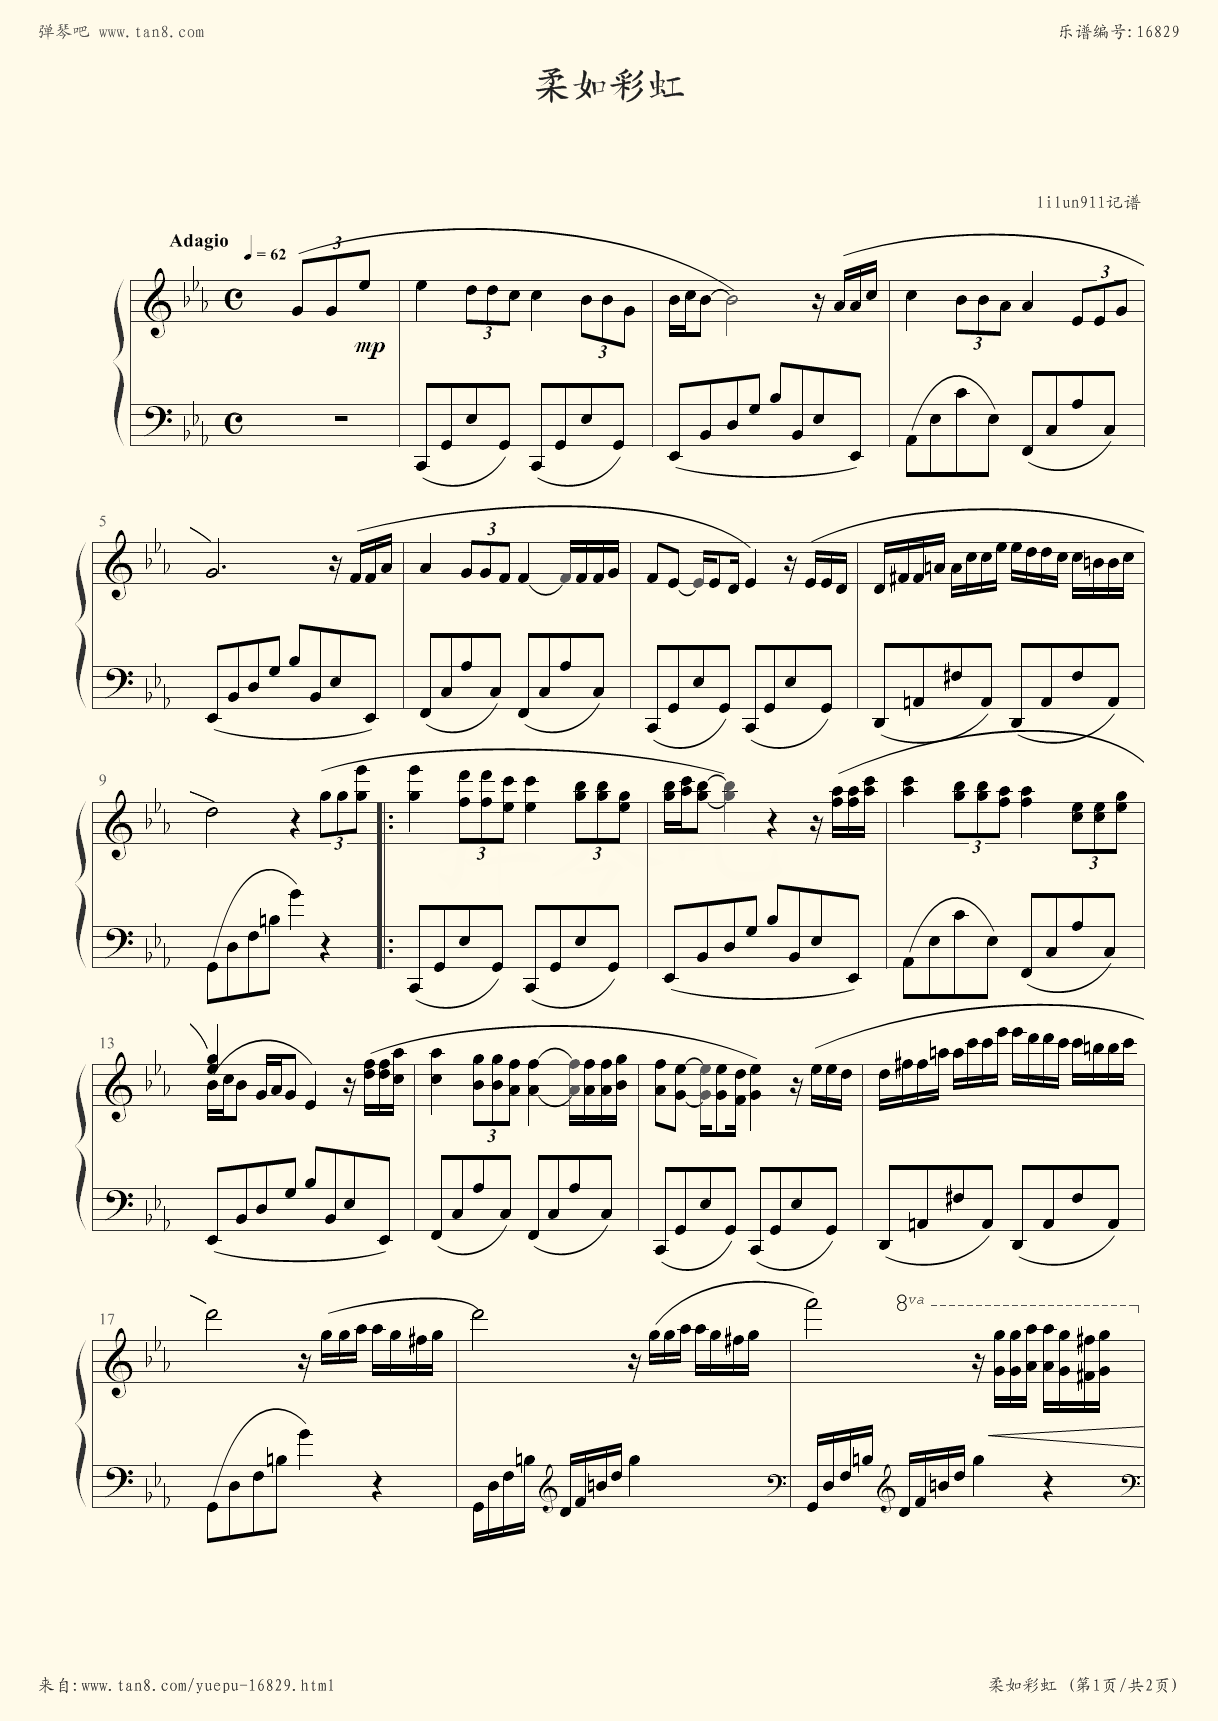 理查德克莱德曼钢琴曲15(理查德克莱德曼钢琴曲13一memory)